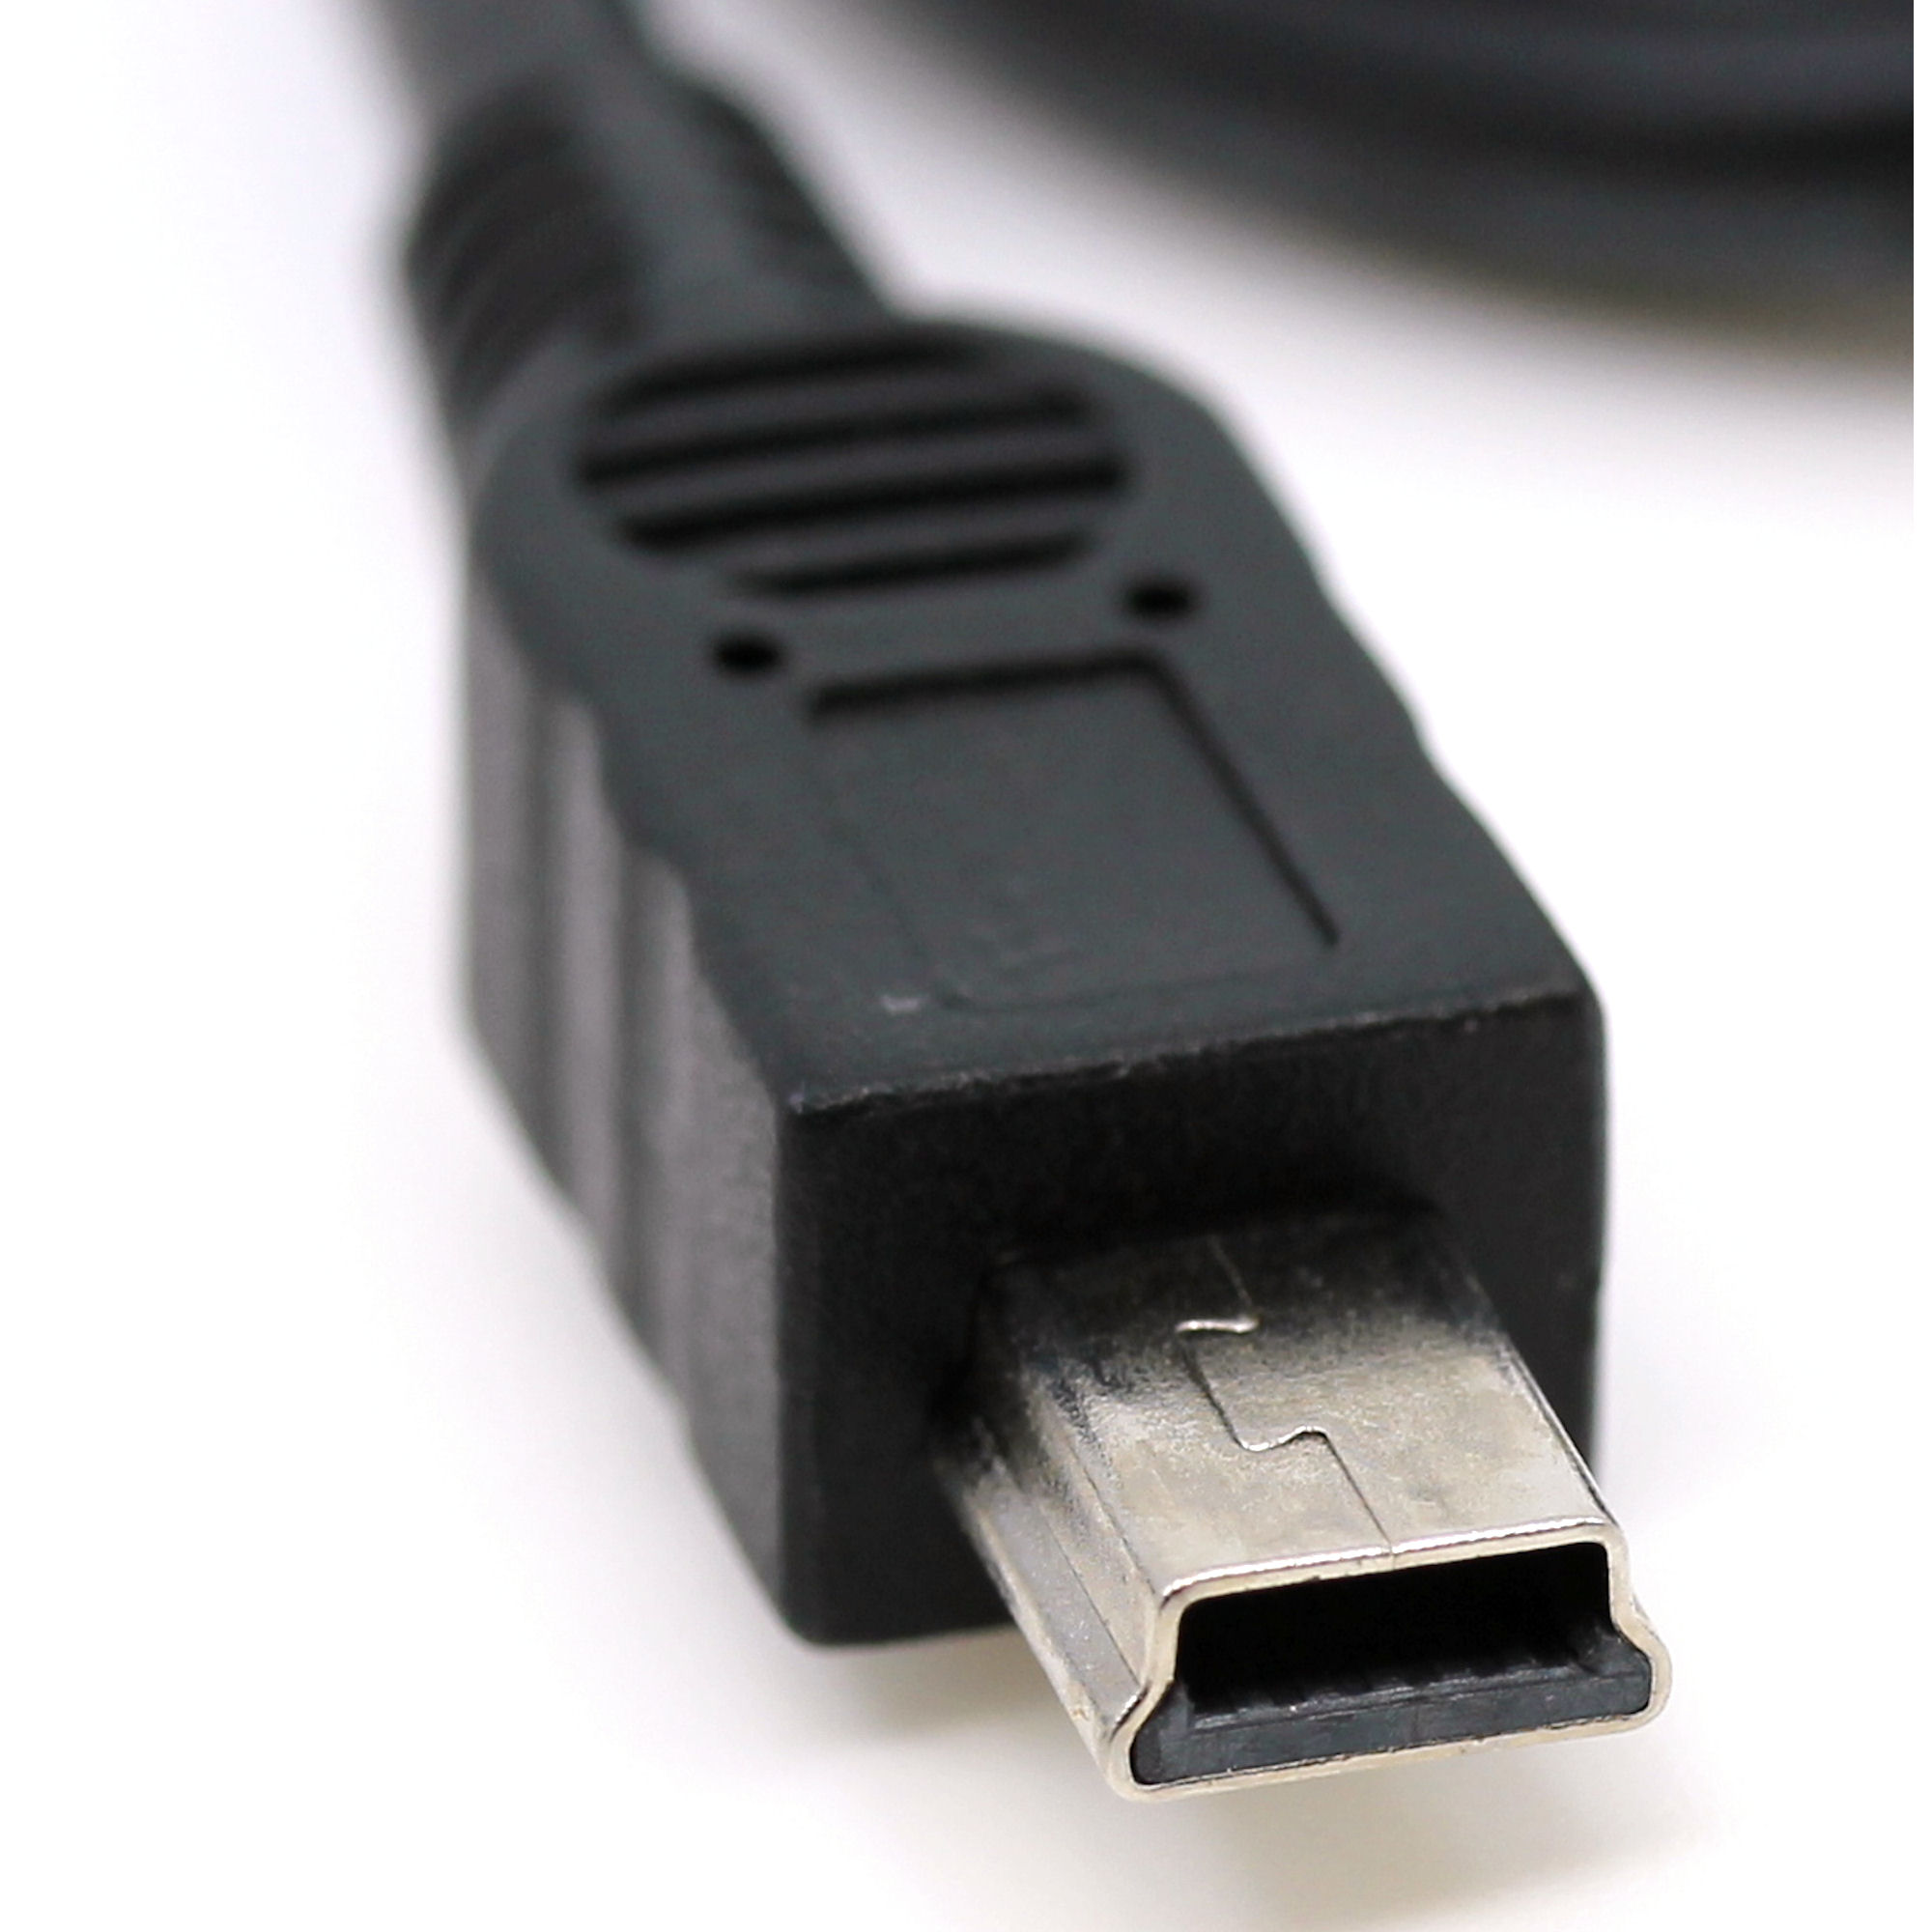 USB Datenkabel für JVC GR-DV400, GR-DV500, GR-DV500E, GR-DV600, GR-DV700, GR-DV800, GR-DV801